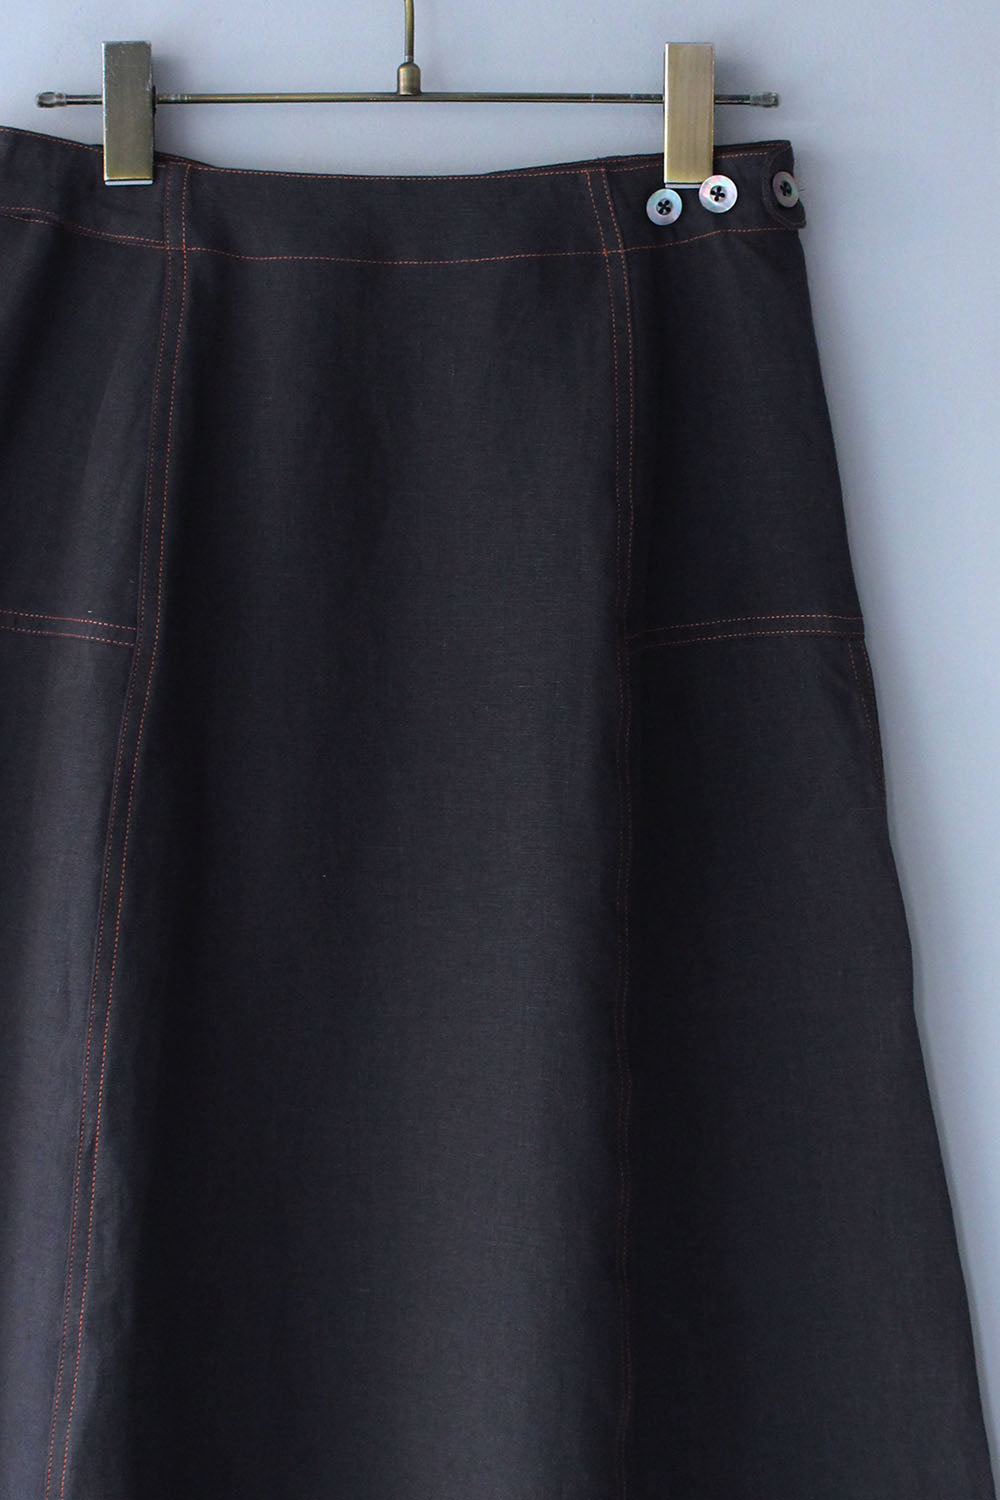 【SALE】JUN MIKAMI “ linen skirt (charcoal) “